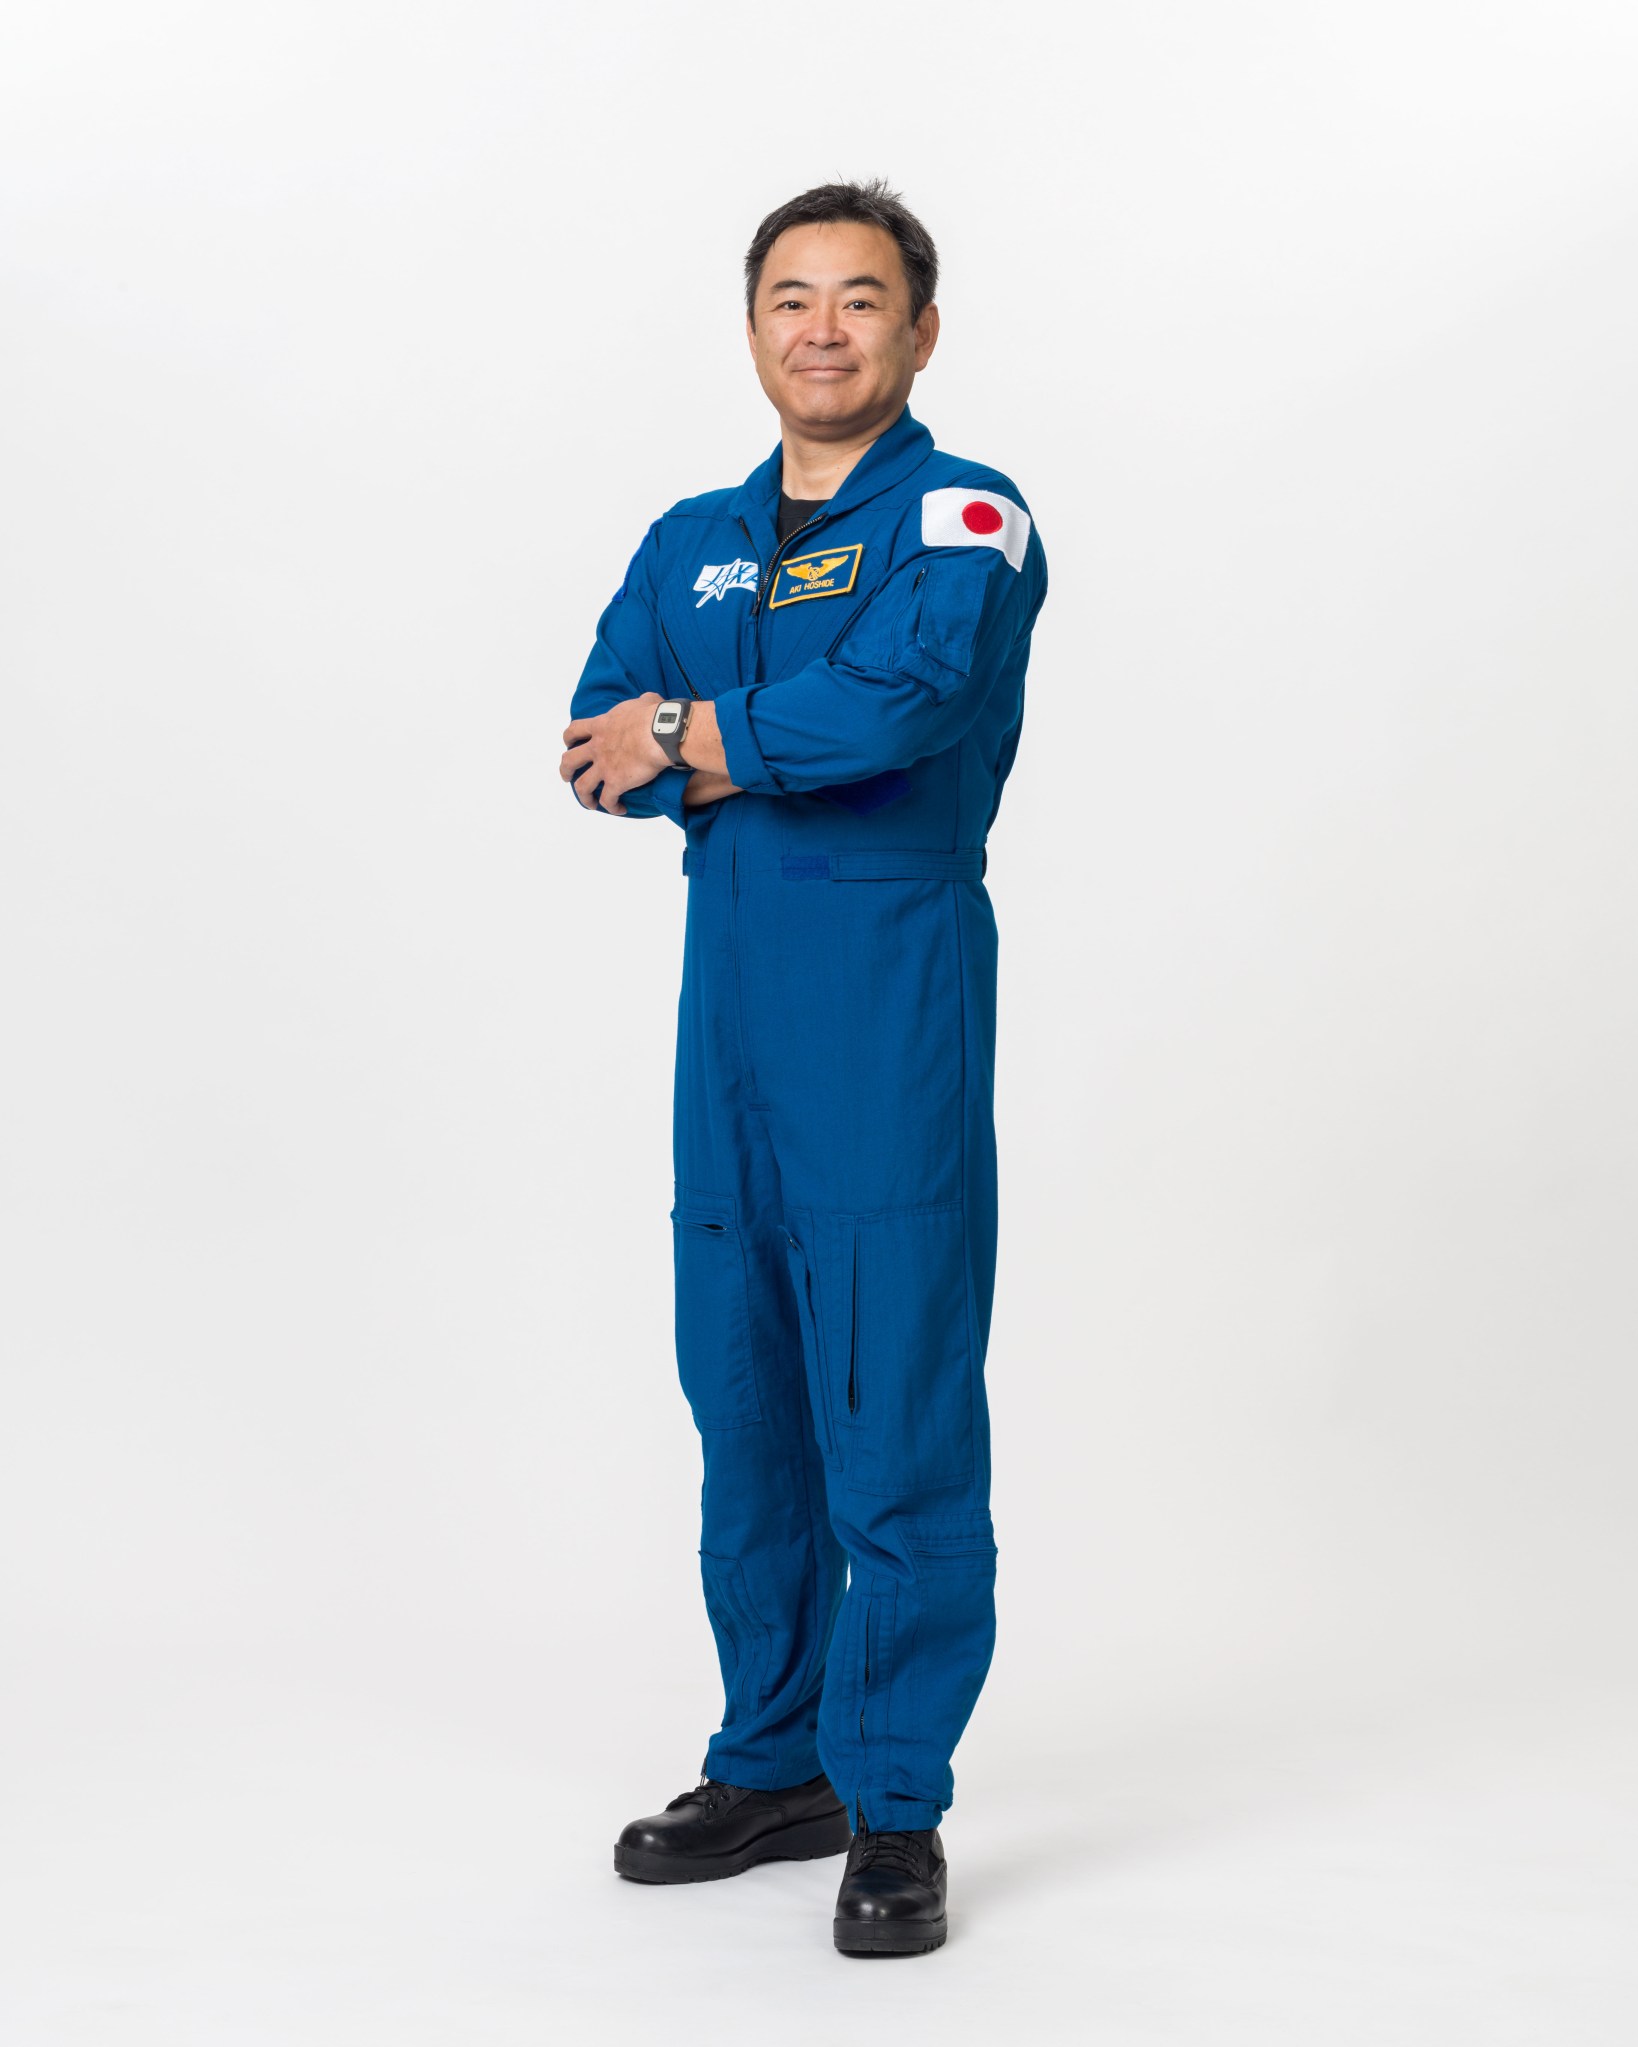 Akihiko “Aki” Hoshide, JAXA astronaut. 